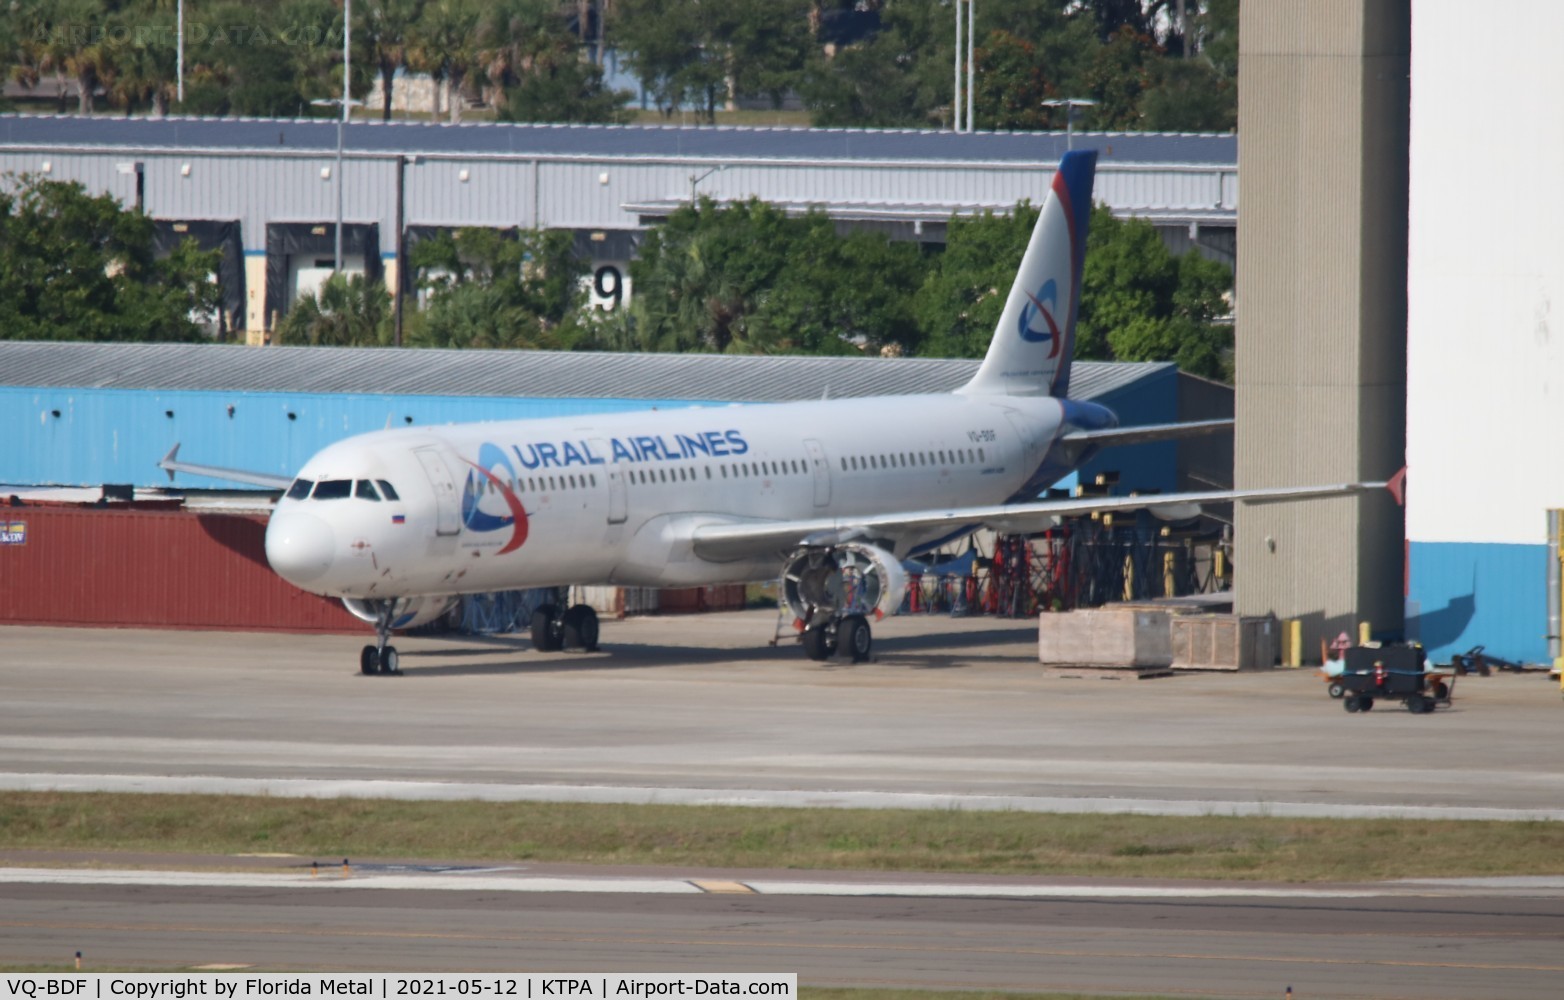 VQ-BDF, 2009 Airbus A320-214 C/N 3880, Ural Airlines